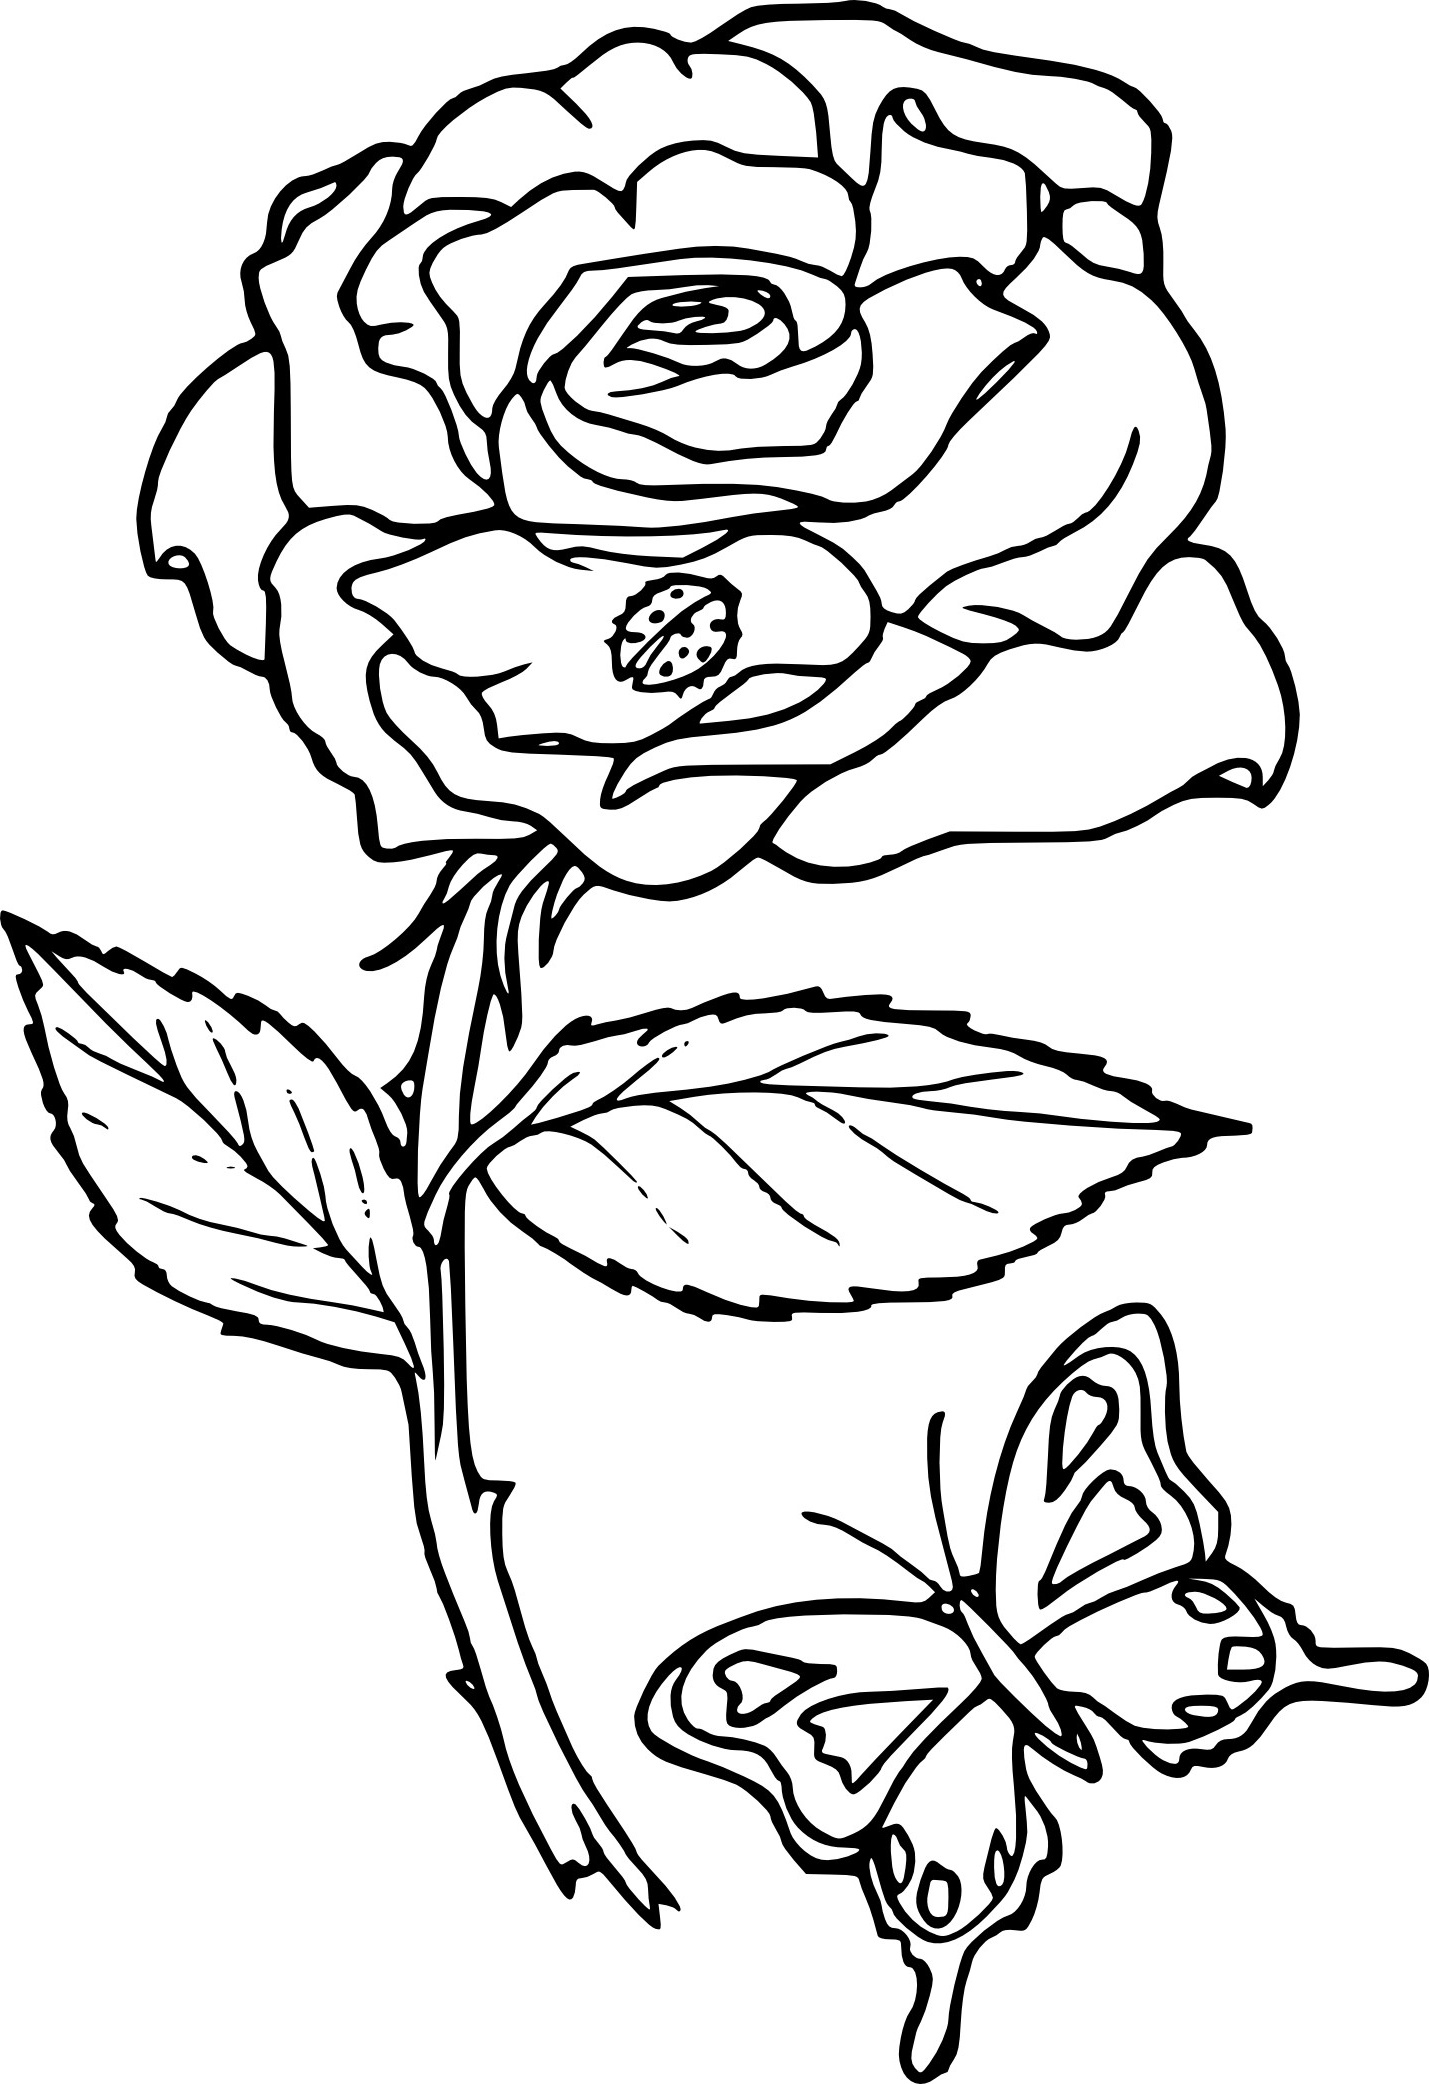 Dessin A Imprimer Fleur Inspirant Collection Coloriage Rose Fleur à Imprimer